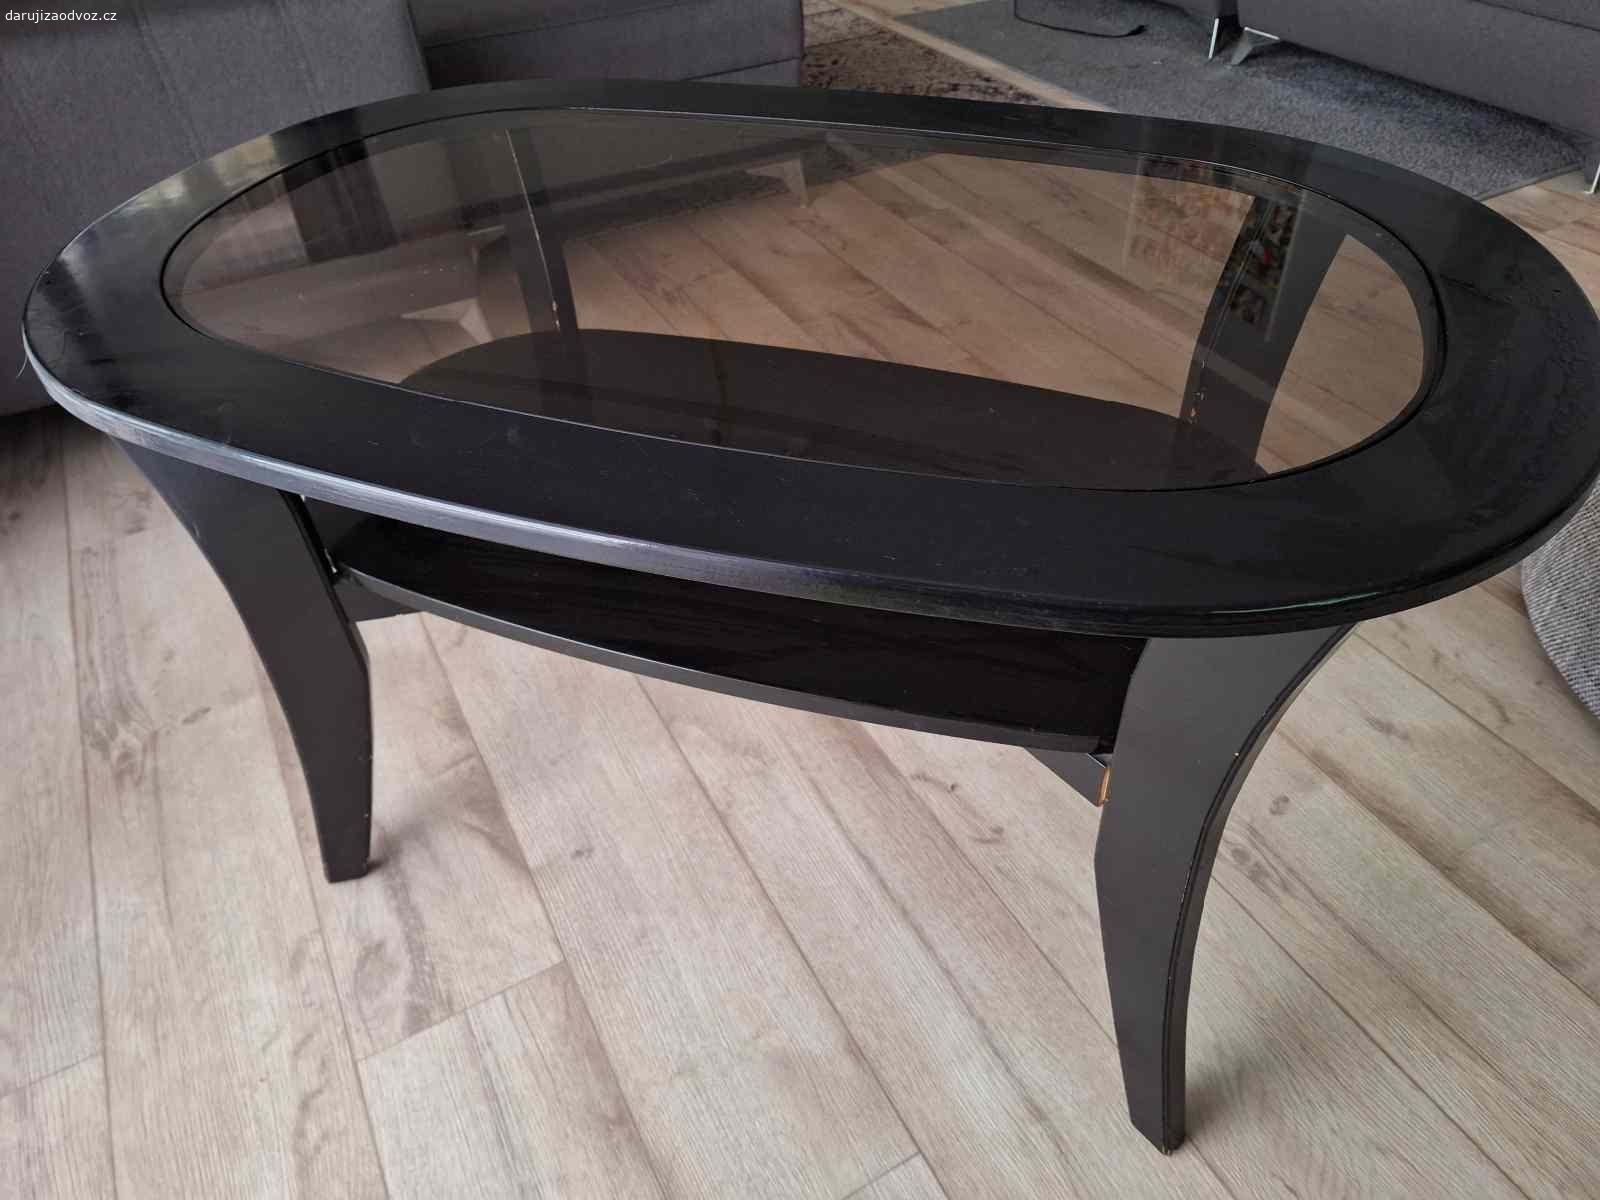 Daruji konferenční stolek černý se skleněnou výpln. Rozměry : 110x70cm, výška 63cm